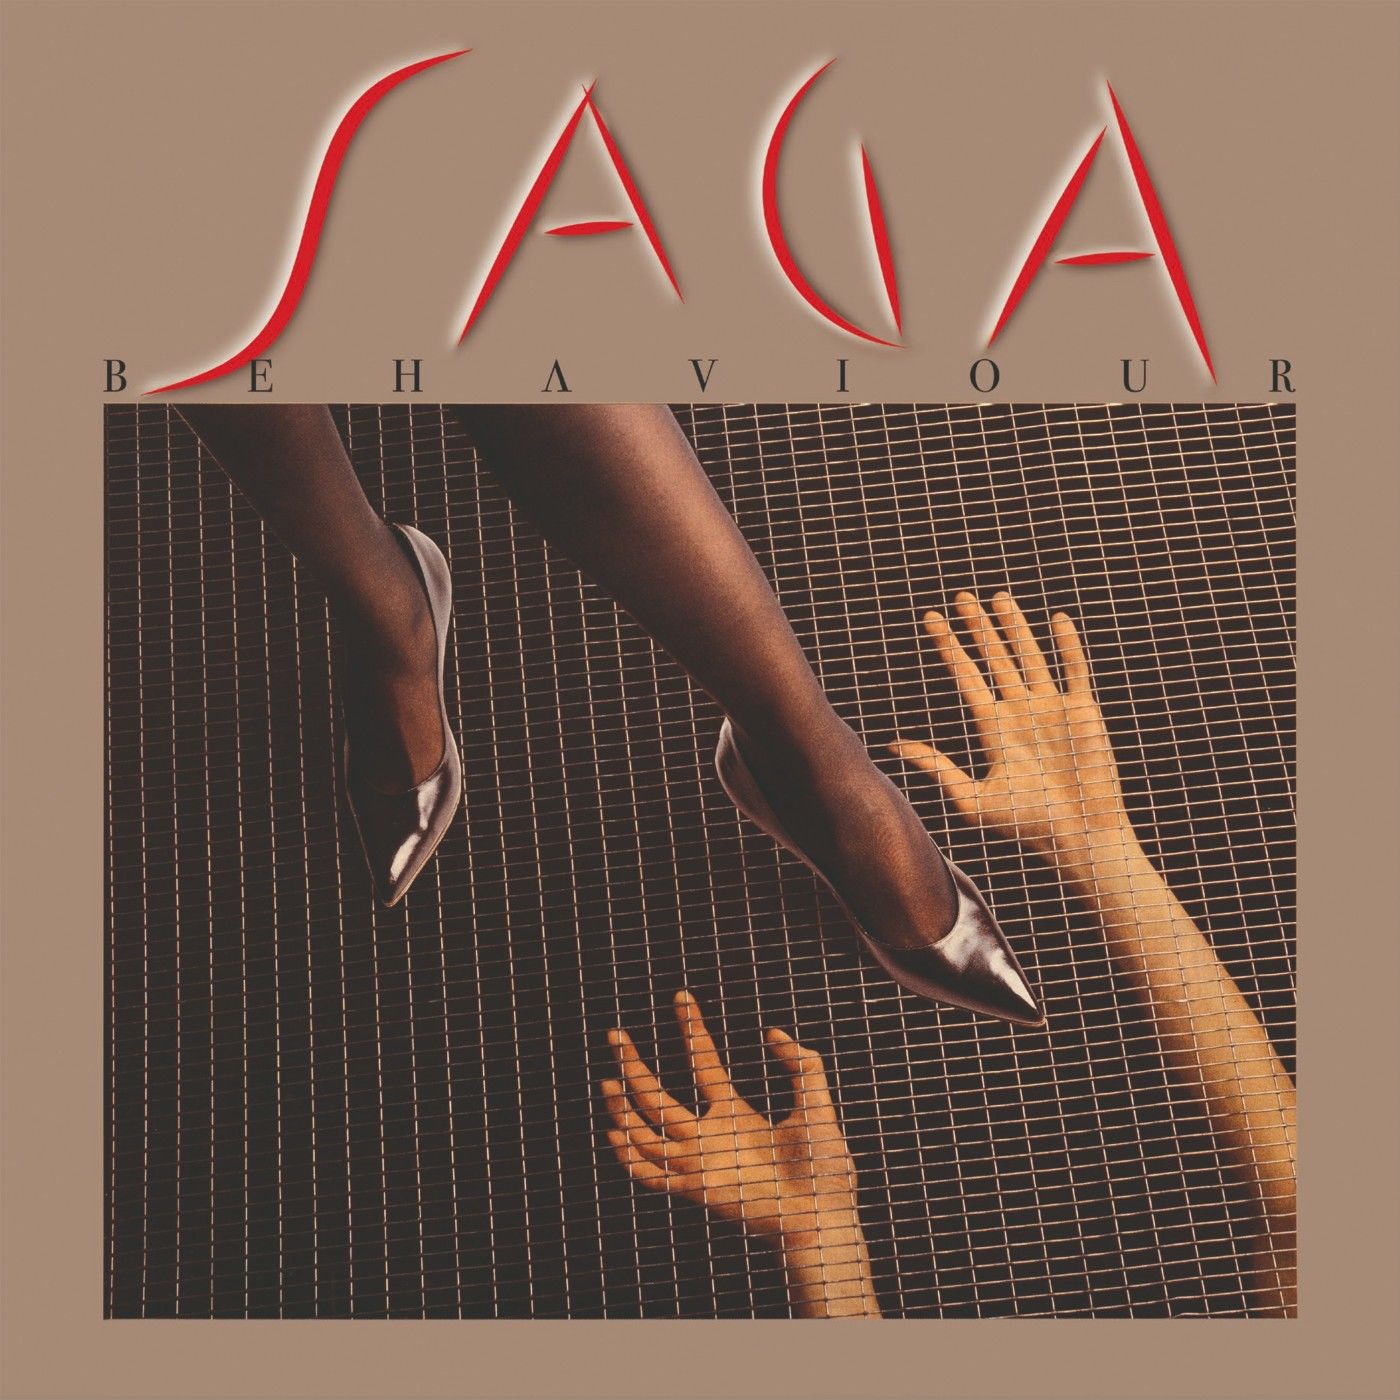 Saga – Behaviour (Remastered 2021) (1985/2021) [Official Digital Download 24bit/48kHz]